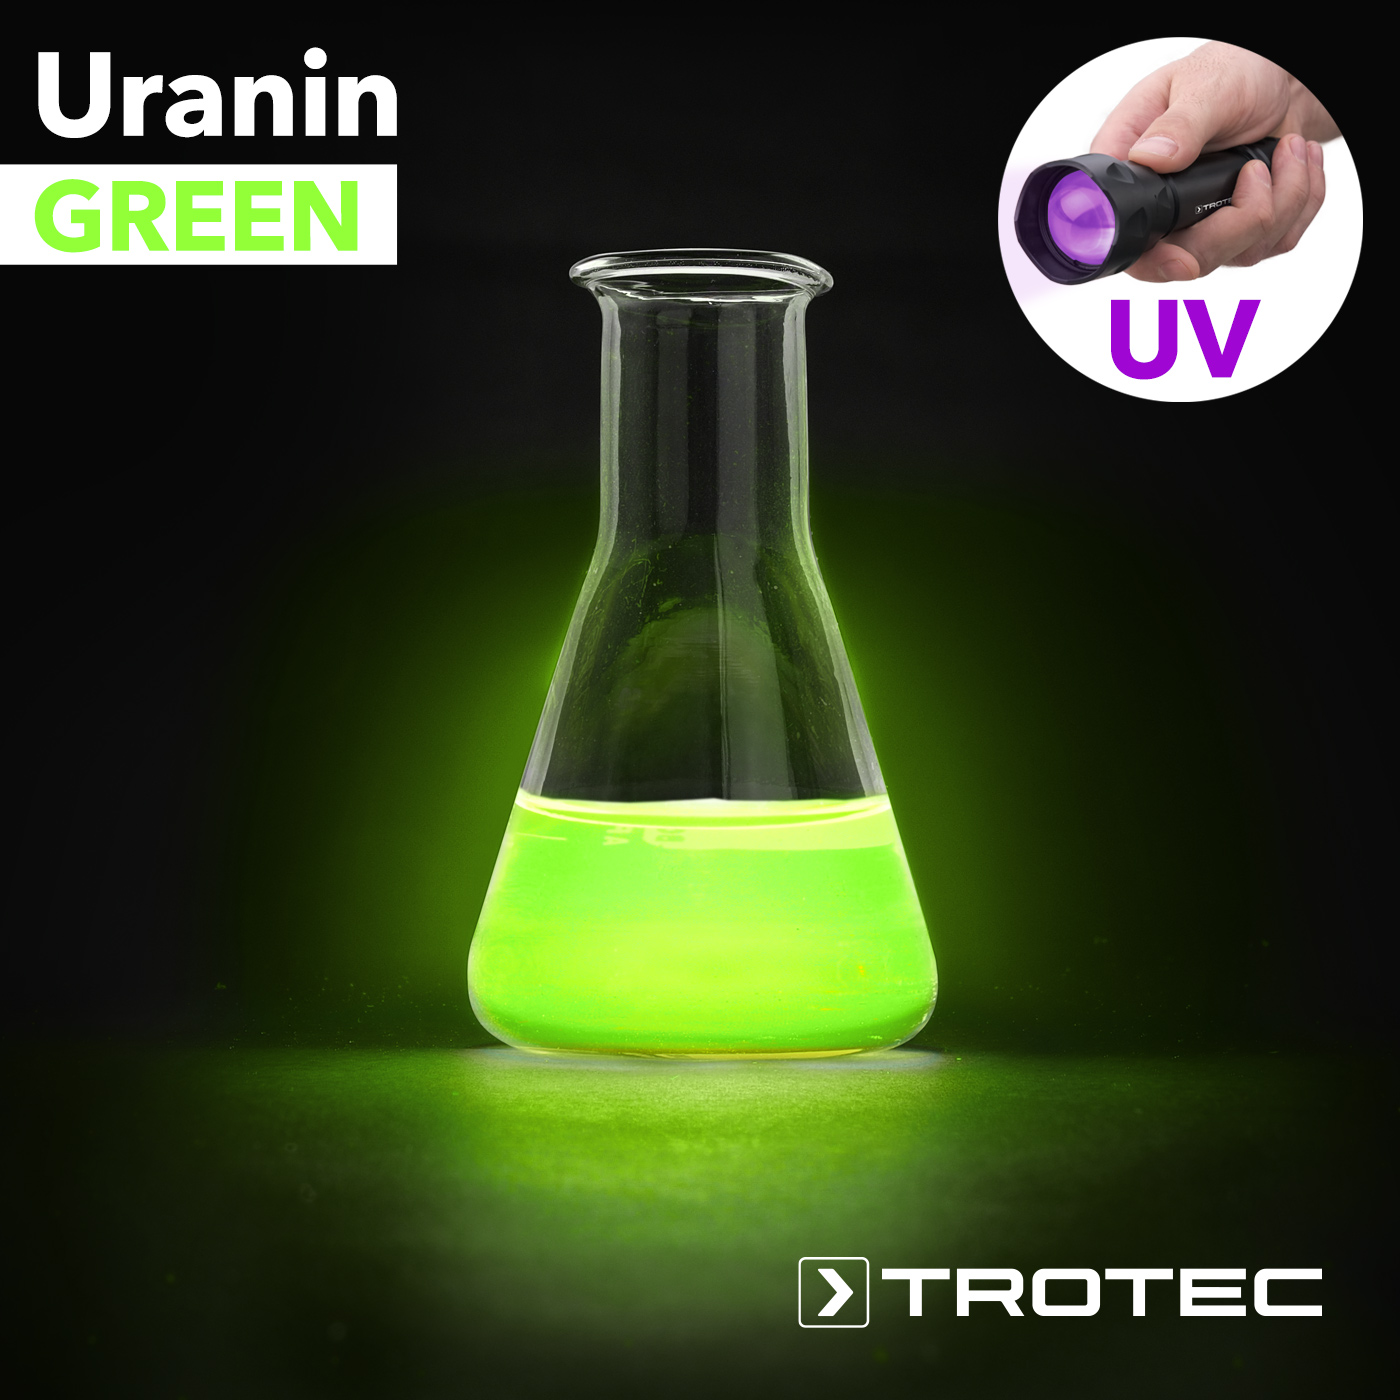 Utiliser du colorant UV pour détecter des fuites